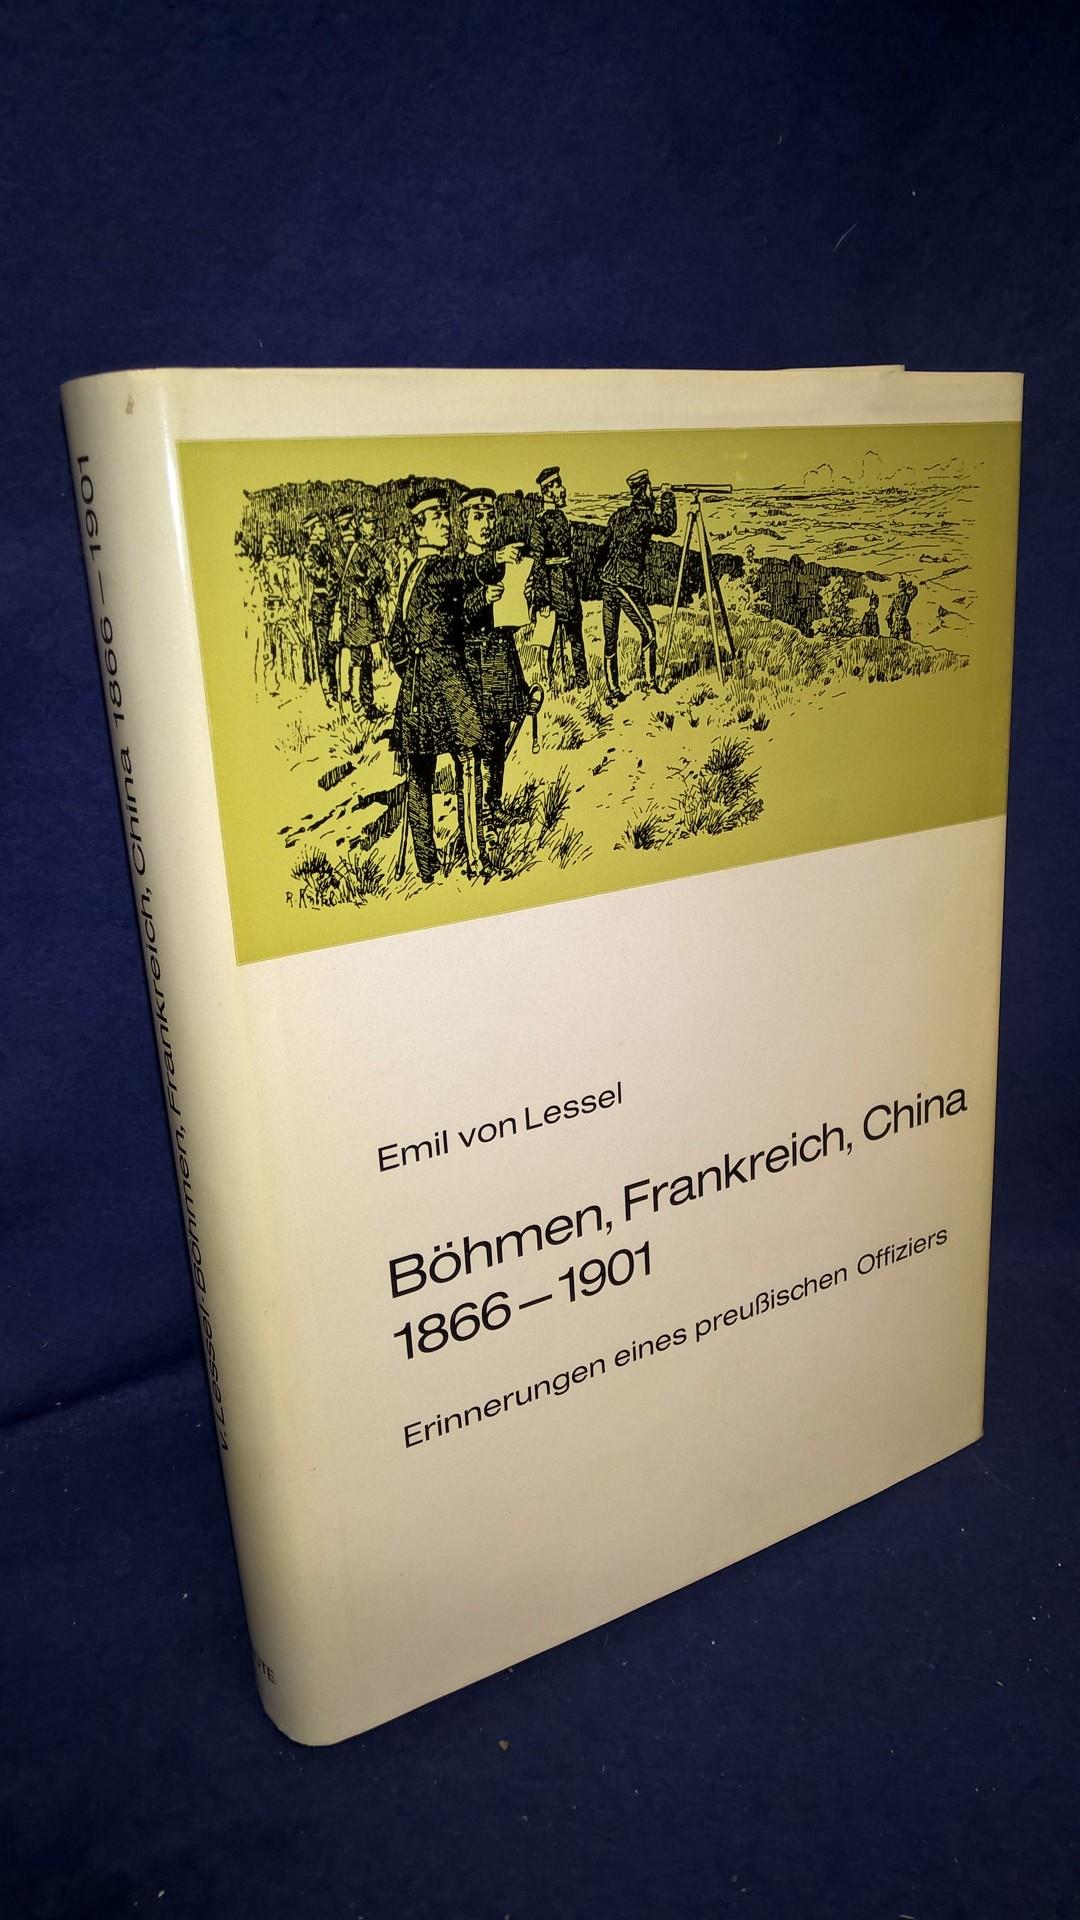 Böhmen, Frankreich, China 1866-1901. Erinnerungen eines preußischen Offiziers